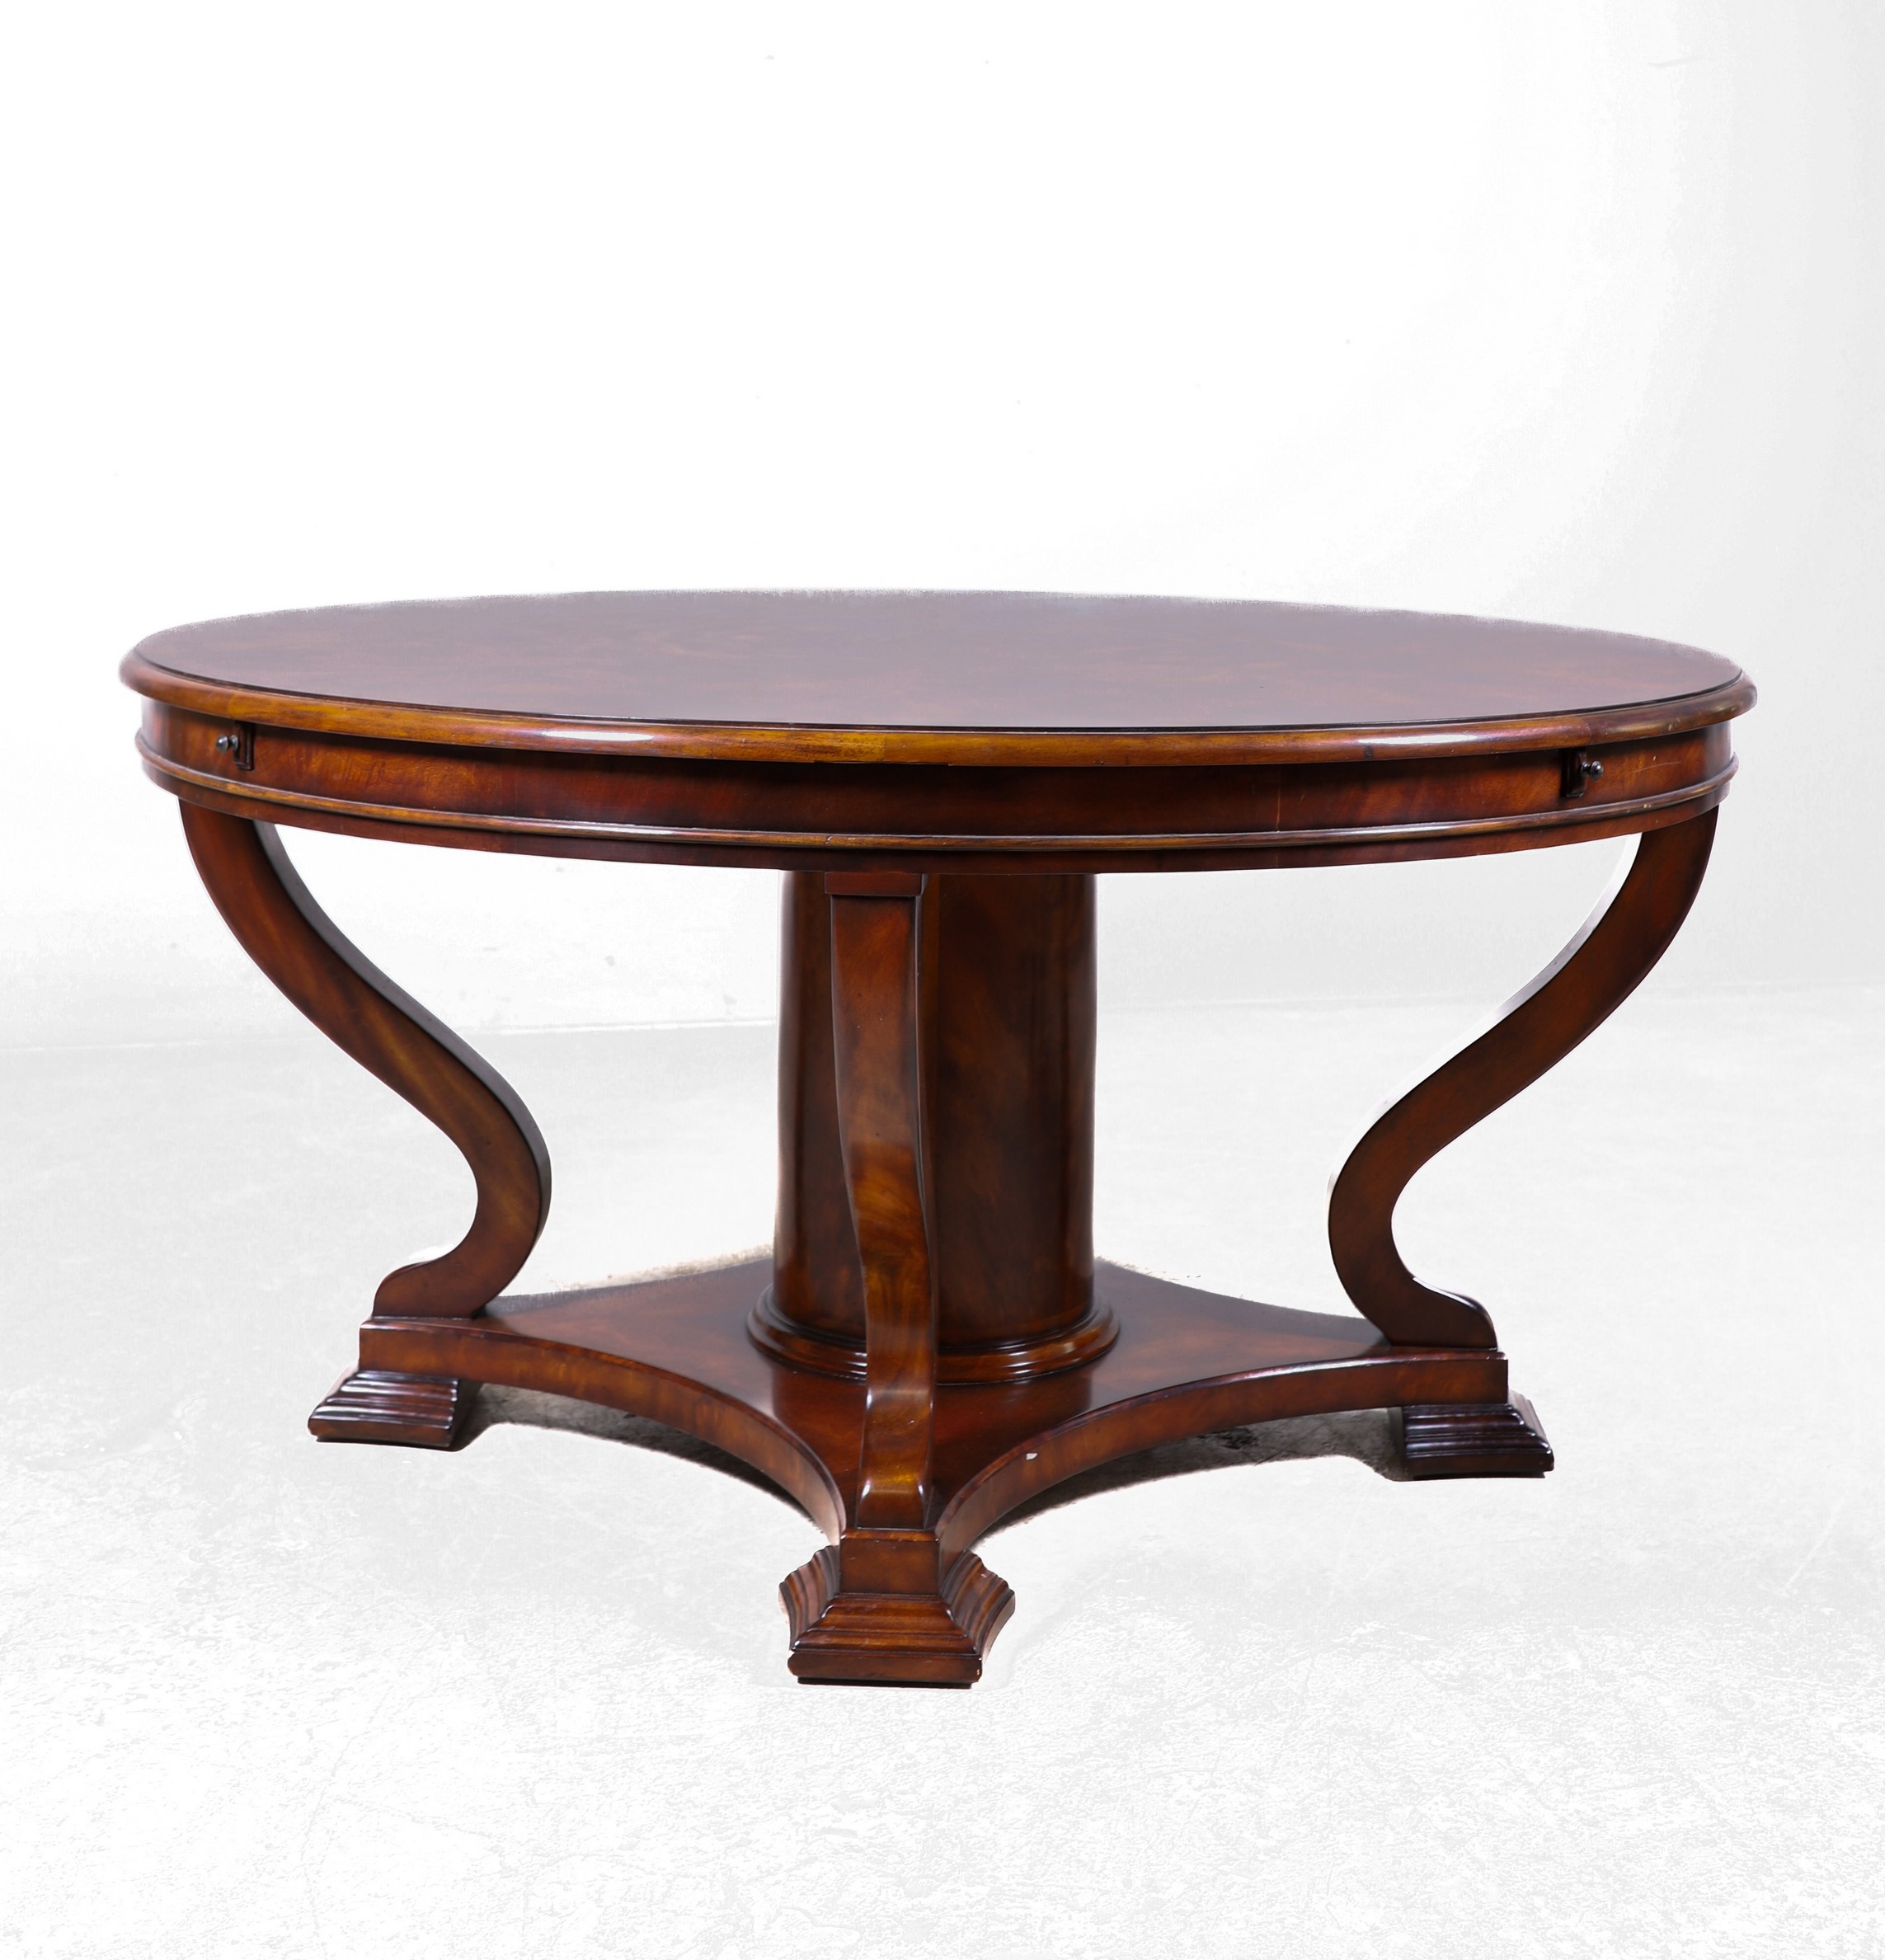 Contemporary mahogany round dining table,